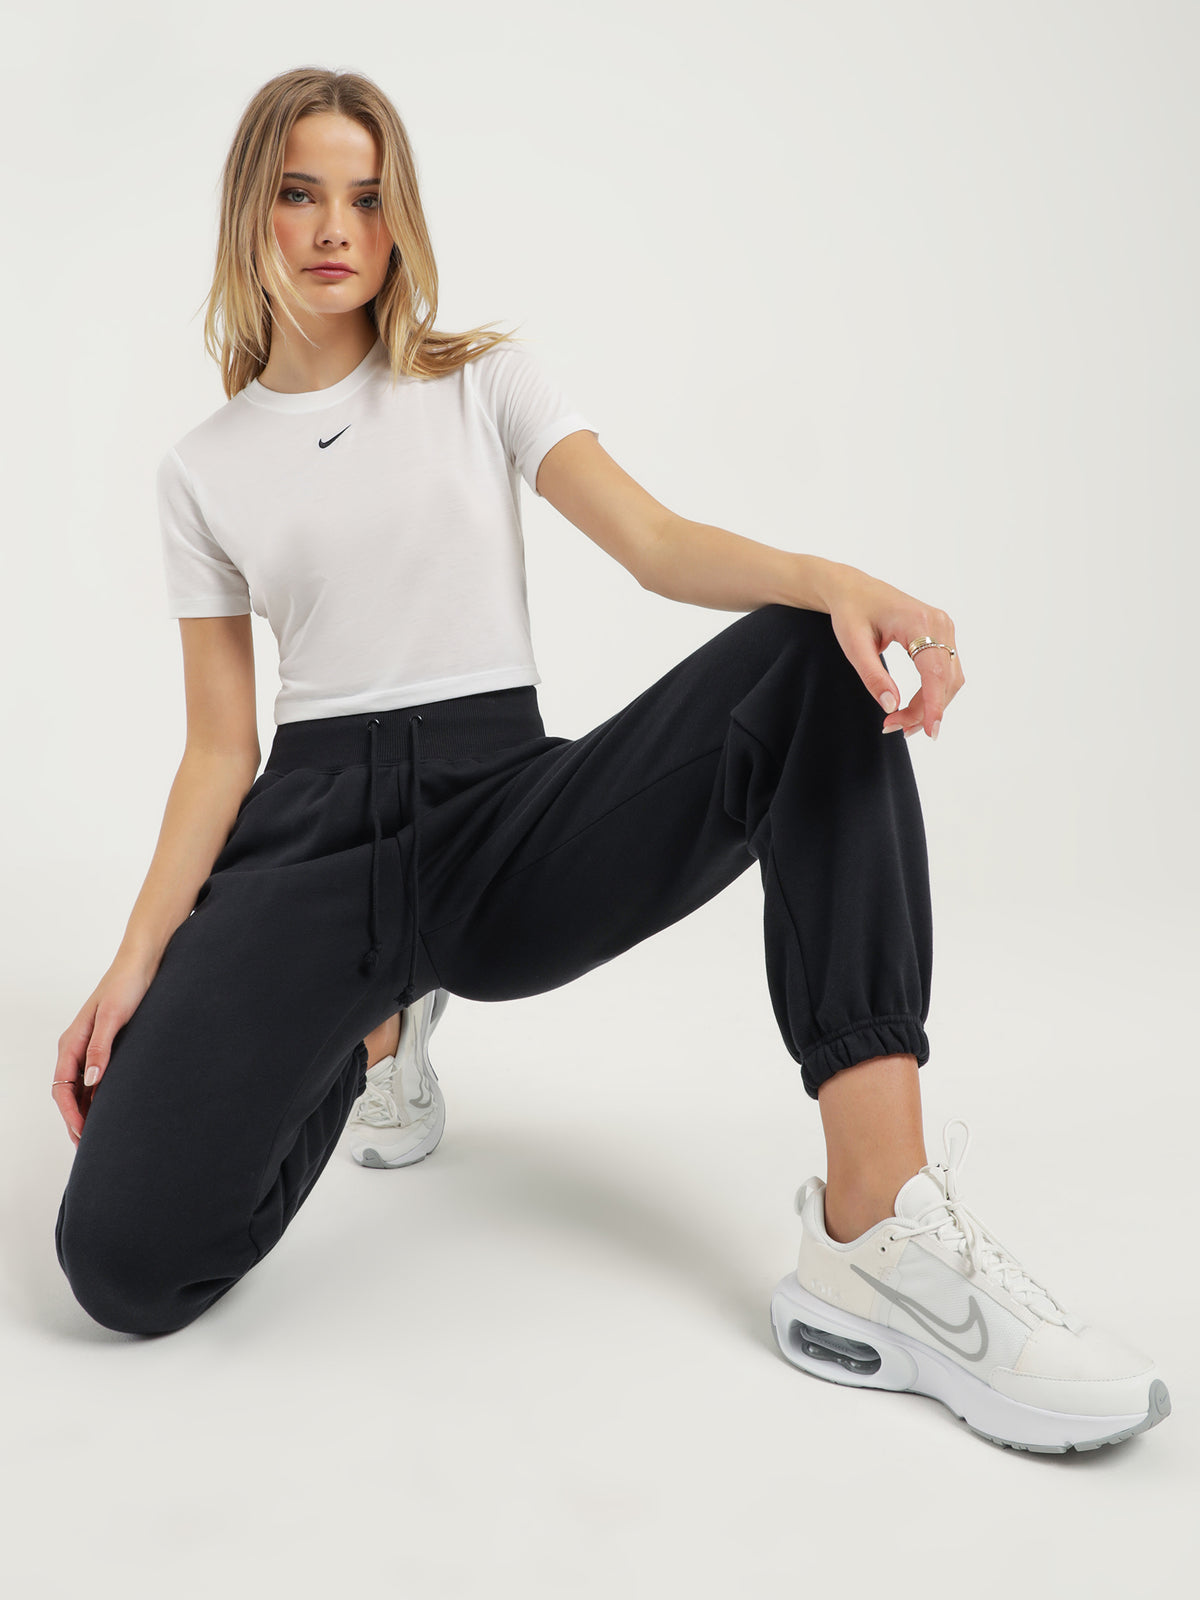 Sportswear Essential Slim Crop T-Shirt in White &amp; Black